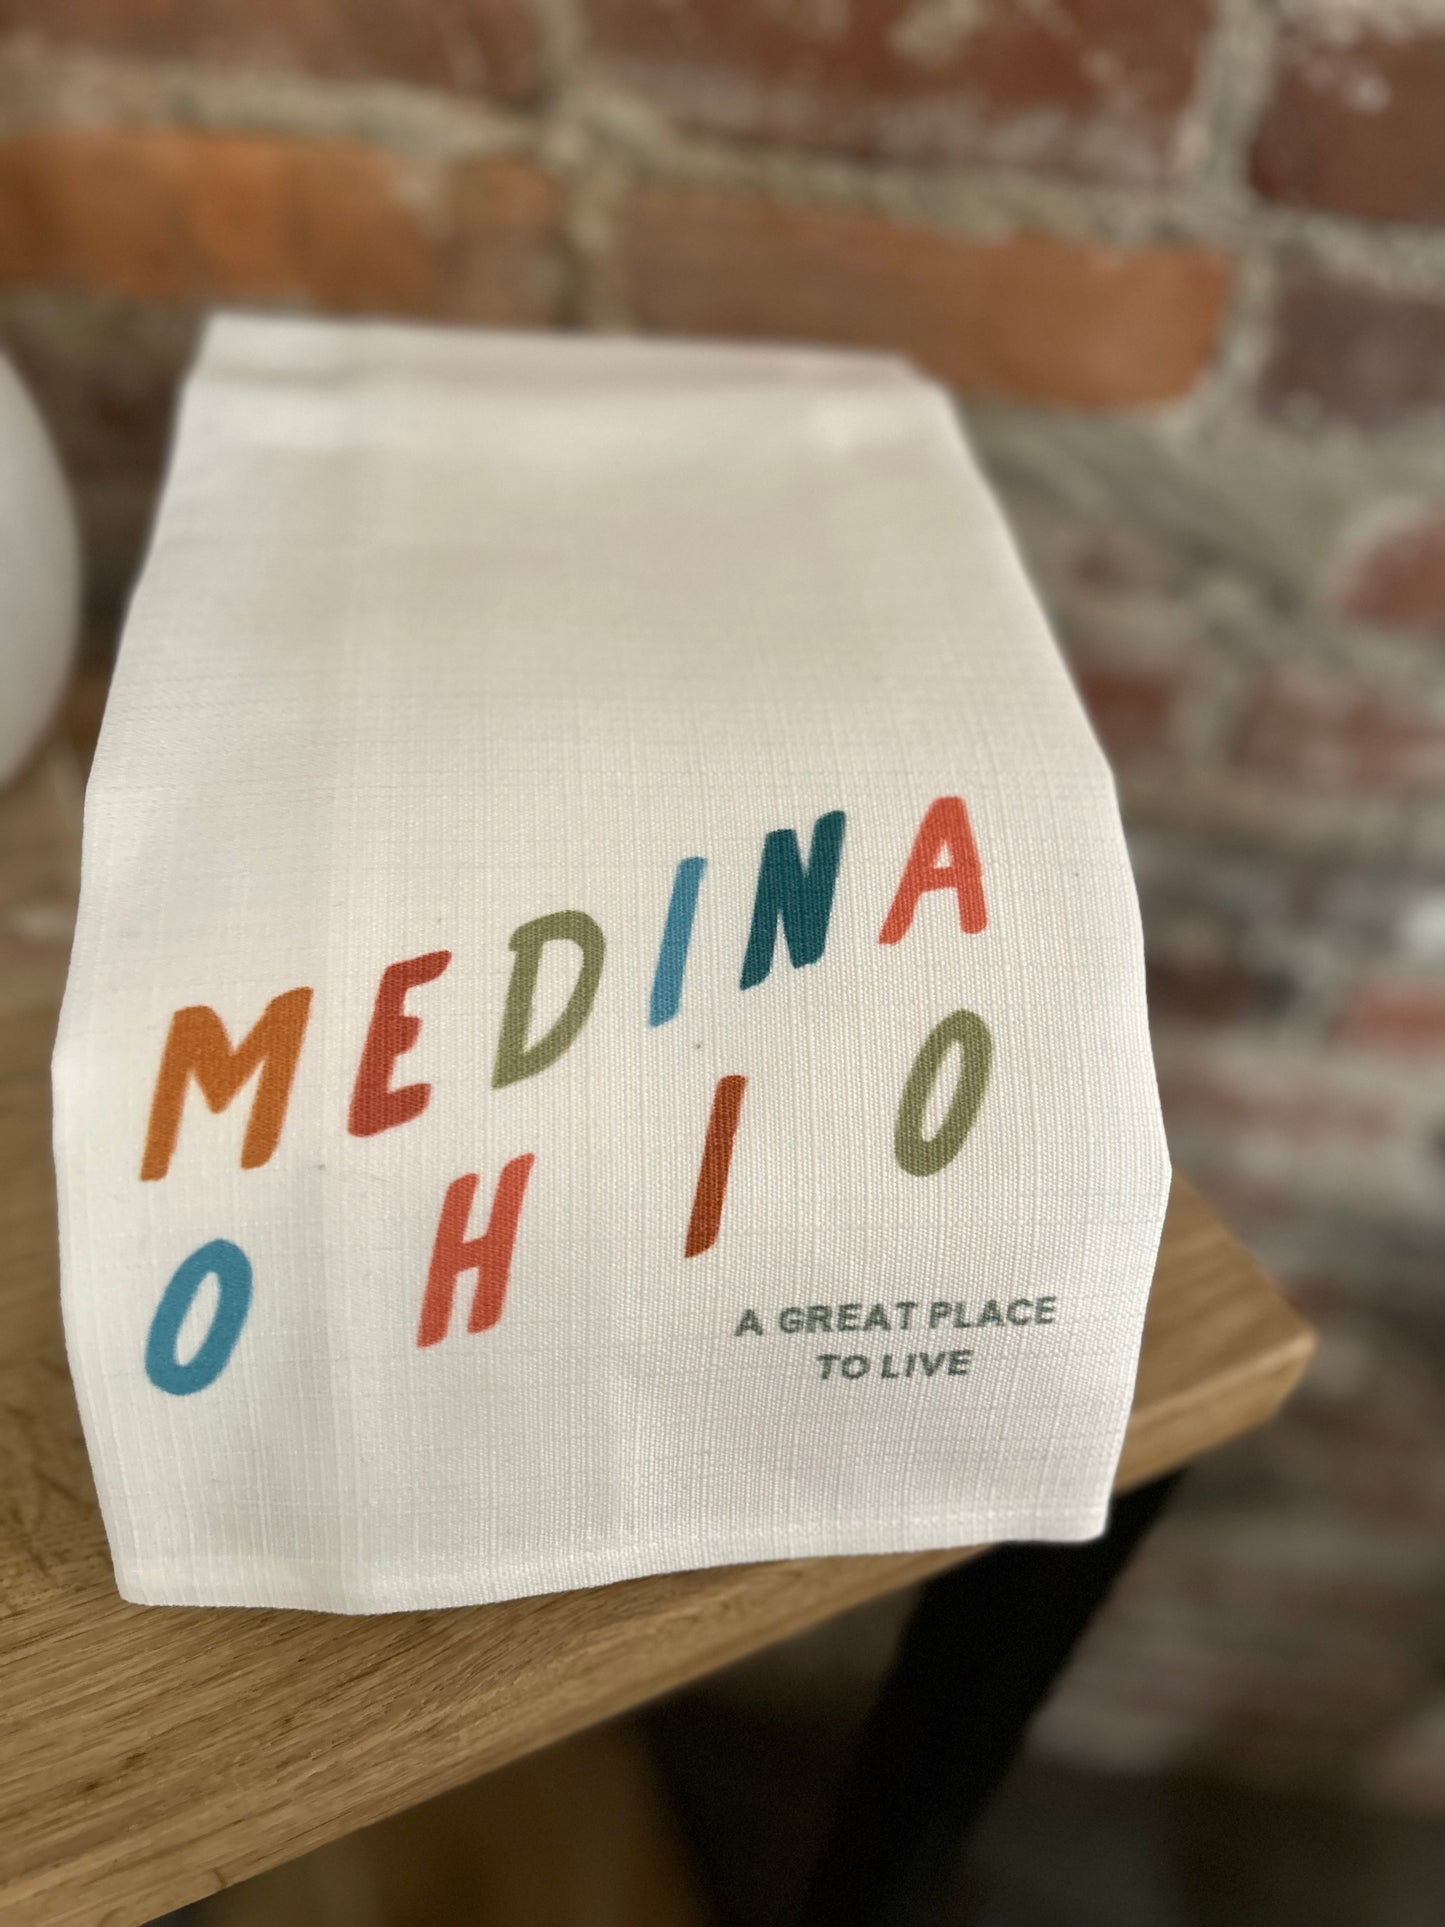 Medina Ohio A Great Place To Live Tea Towel